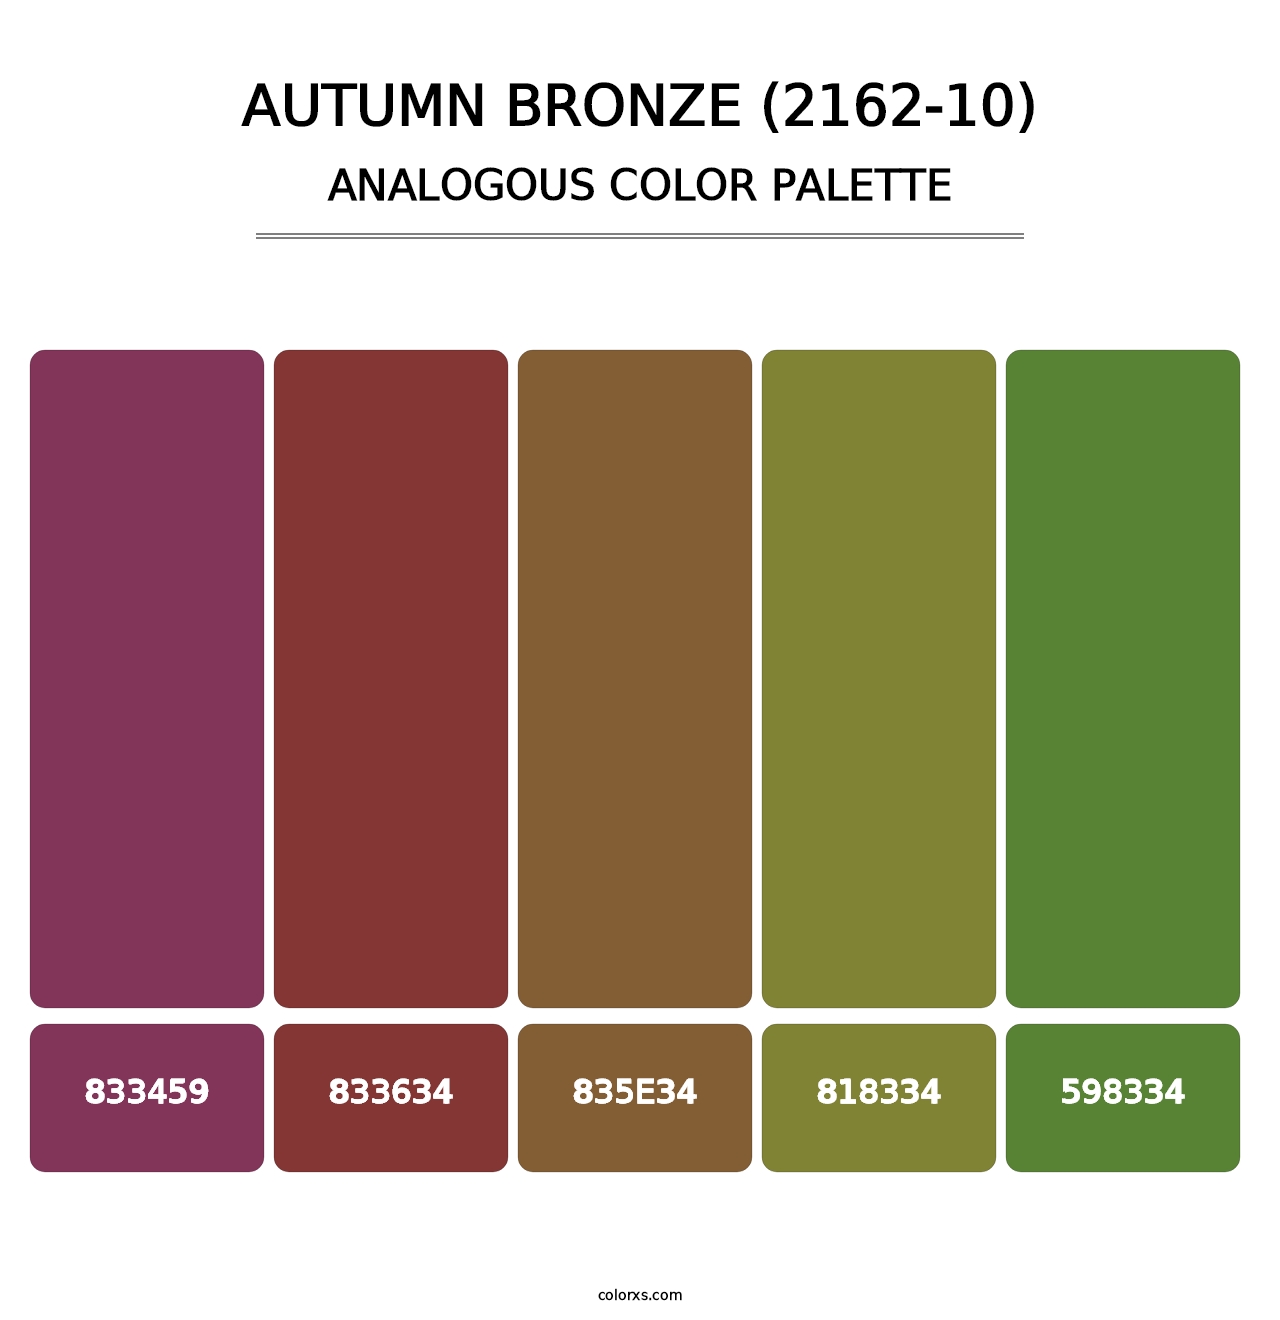 Autumn Bronze (2162-10) - Analogous Color Palette